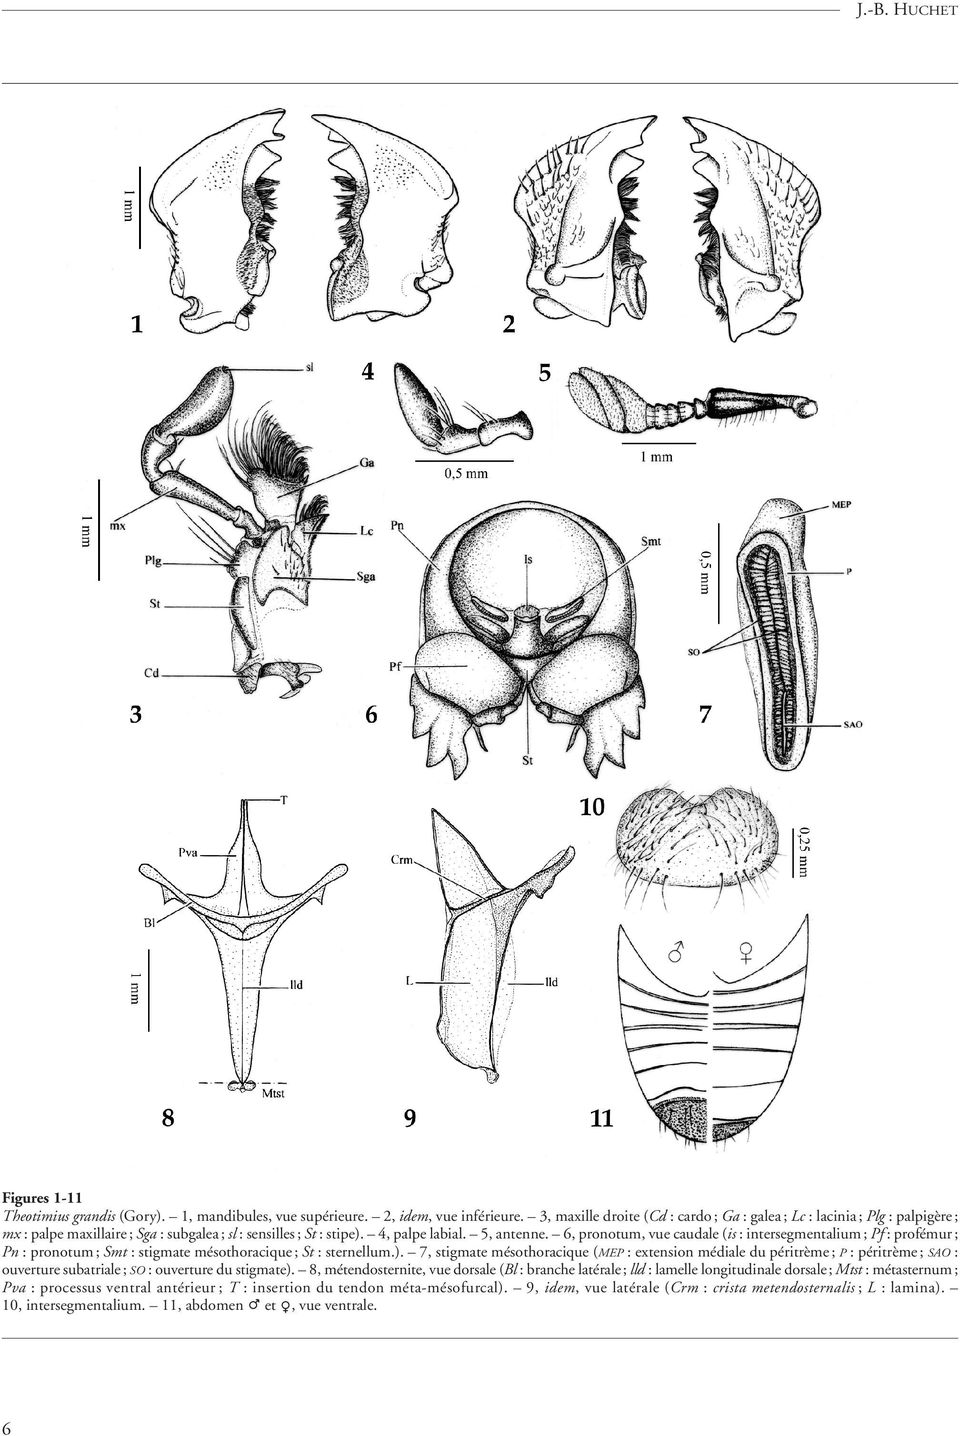 6, pronotum, vue caudale (is : intersegmentalium ; Pf : profémur ; Pn : pronotum ; Smt : stigmate mésothoracique ; St : sternellum.).